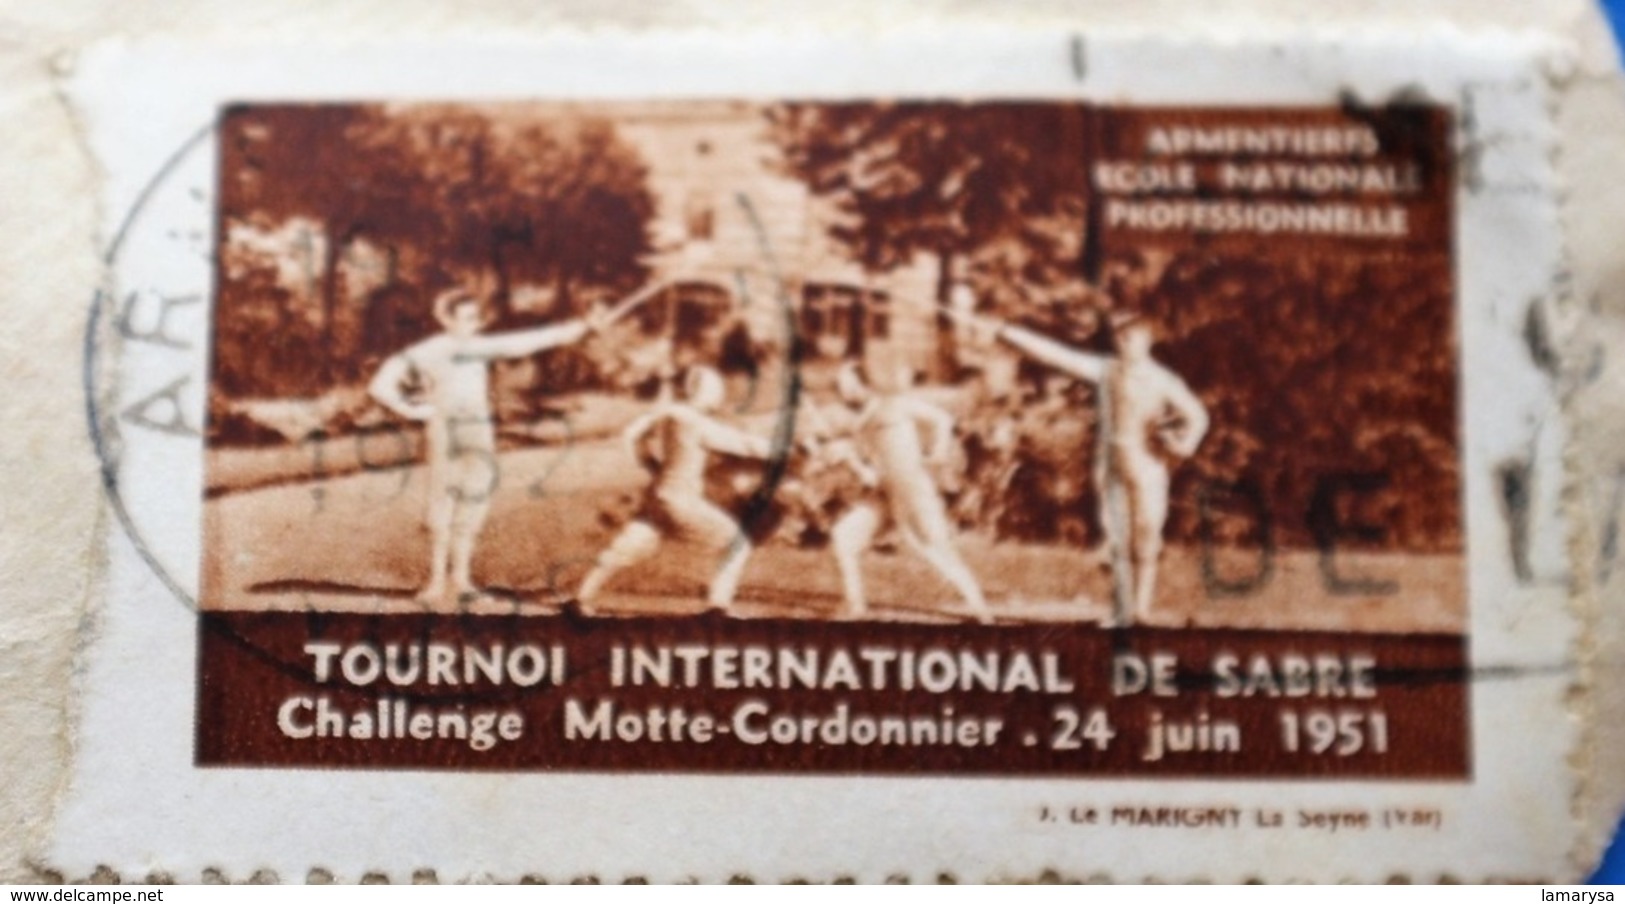 ARMENTIÈRES 1951 TOURNOI INTERNATIONAL DE SABRE CHALLE MAÎTRE CORDONNIER Vignette-Erinnophilie,Timbre,stamp,Bollo-Viñeta - Sport